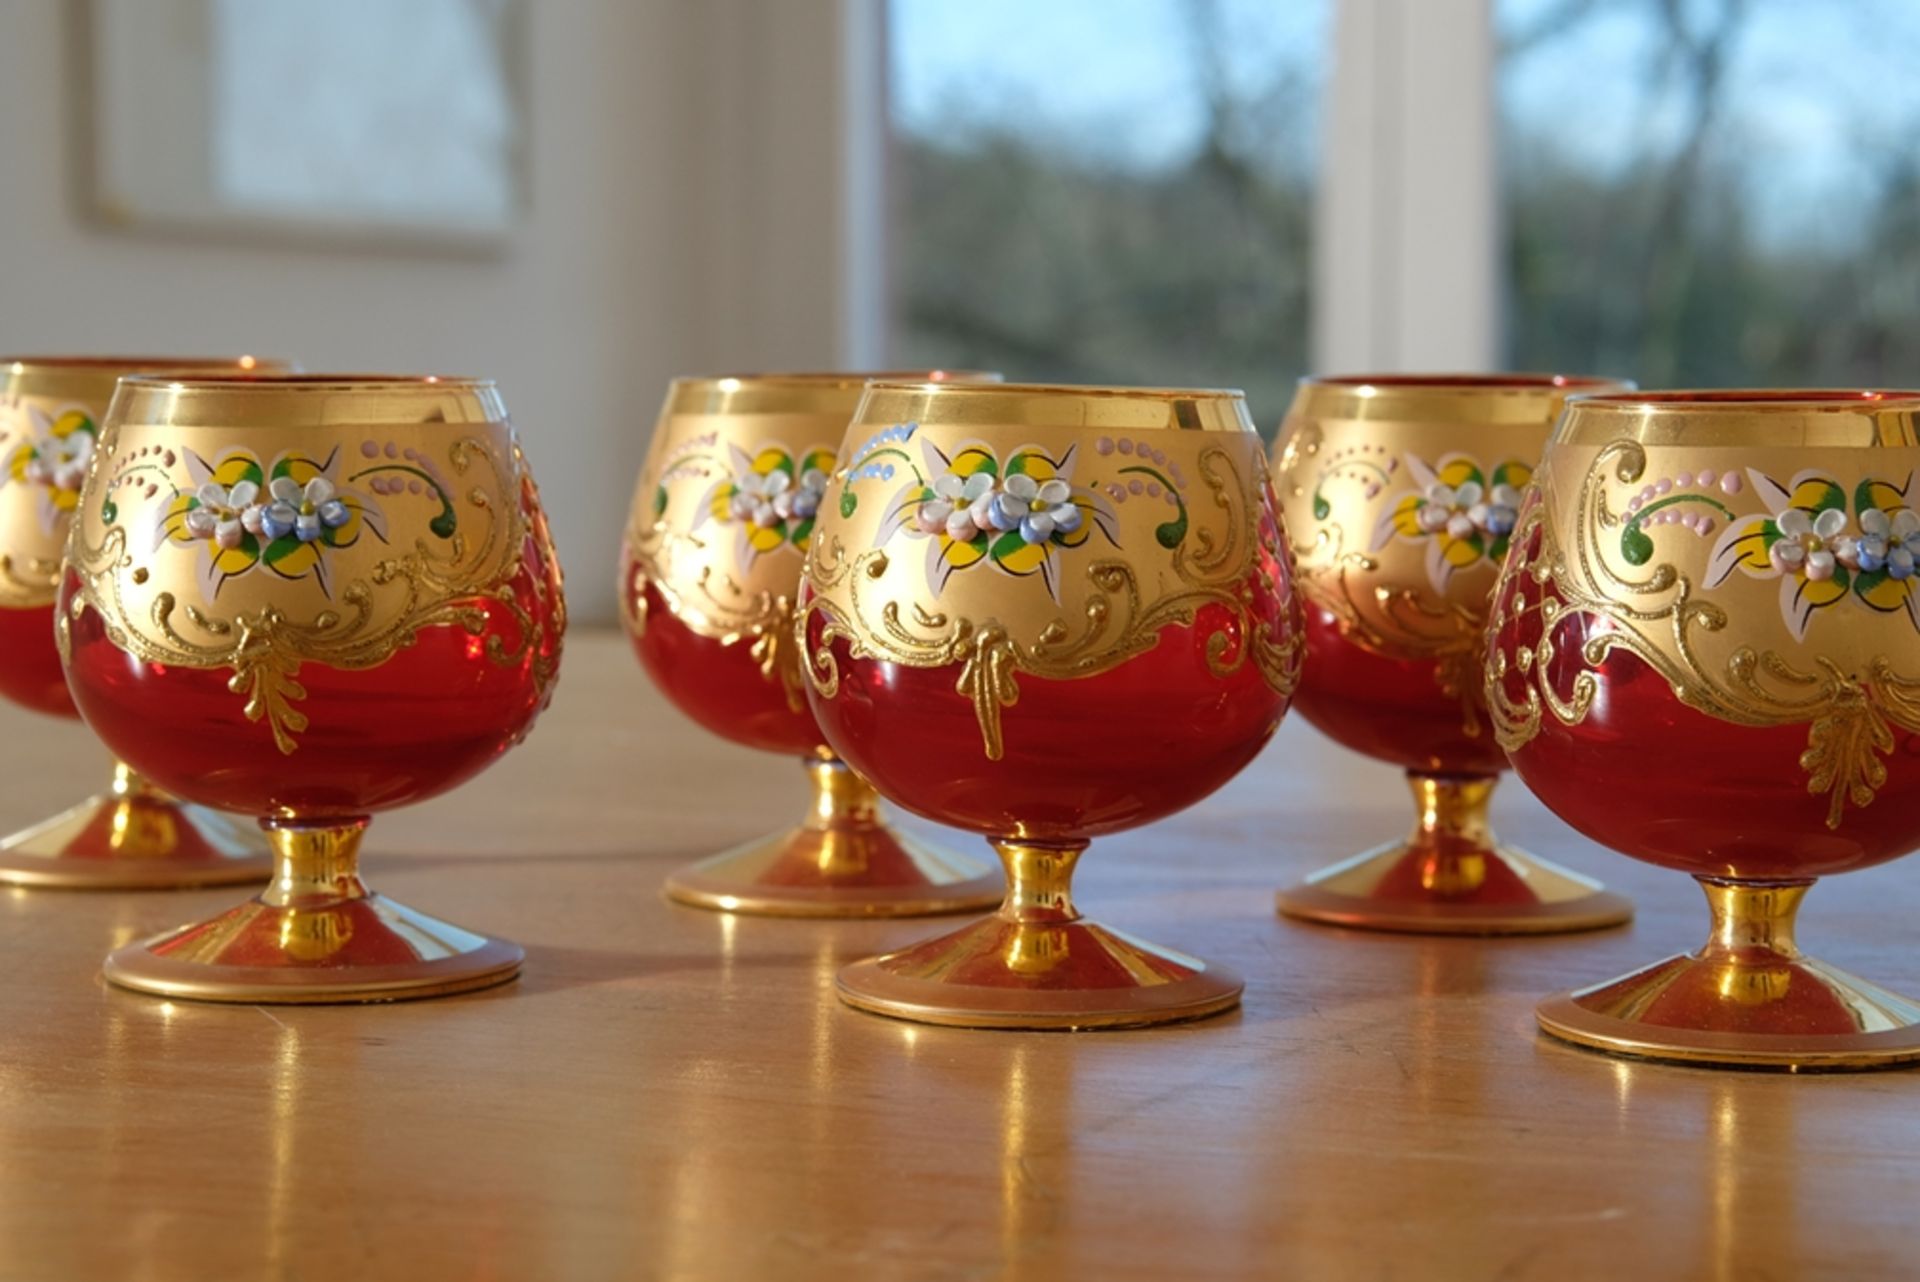 Murano Trefuochi sechs Cognacgläser, originale venezianische Gläser, rubinrotes Glas, Blattgold ema - Bild 2 aus 4